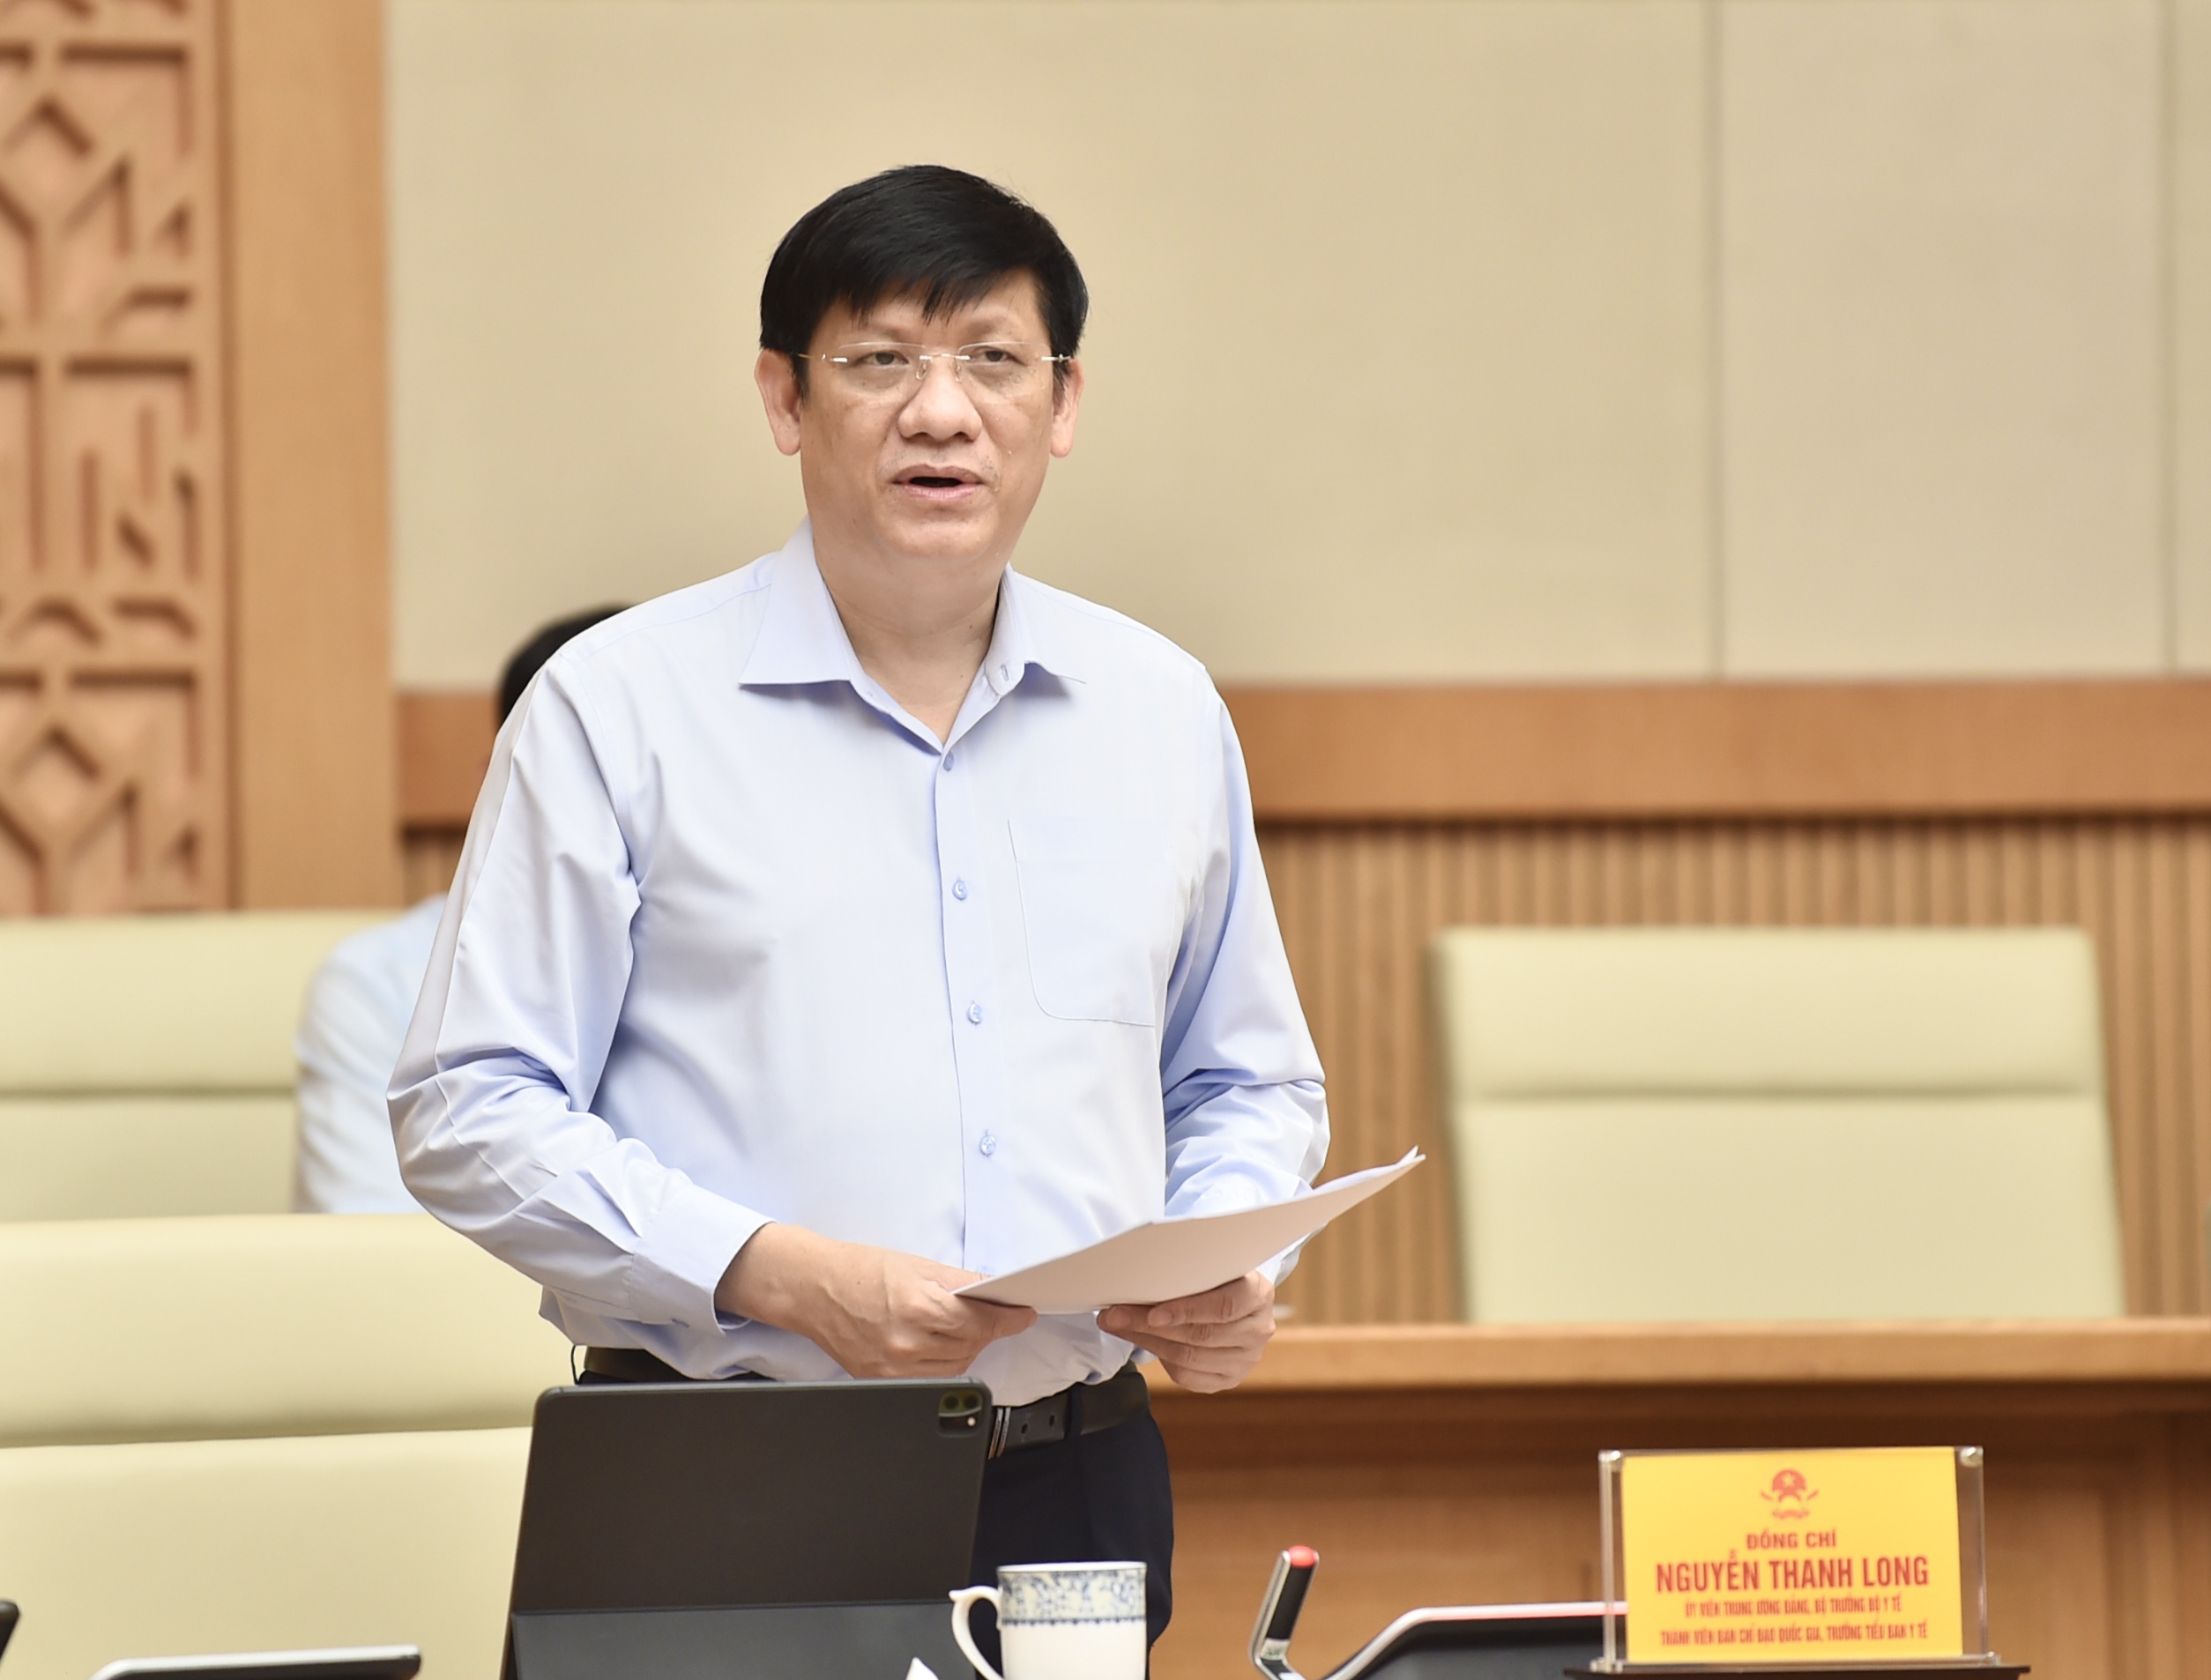 Bộ trưởng Bộ Y tế Nguyễn Thanh Long phát biểu tại cuộc họp - Ảnh: VGP/Nhật Bắc